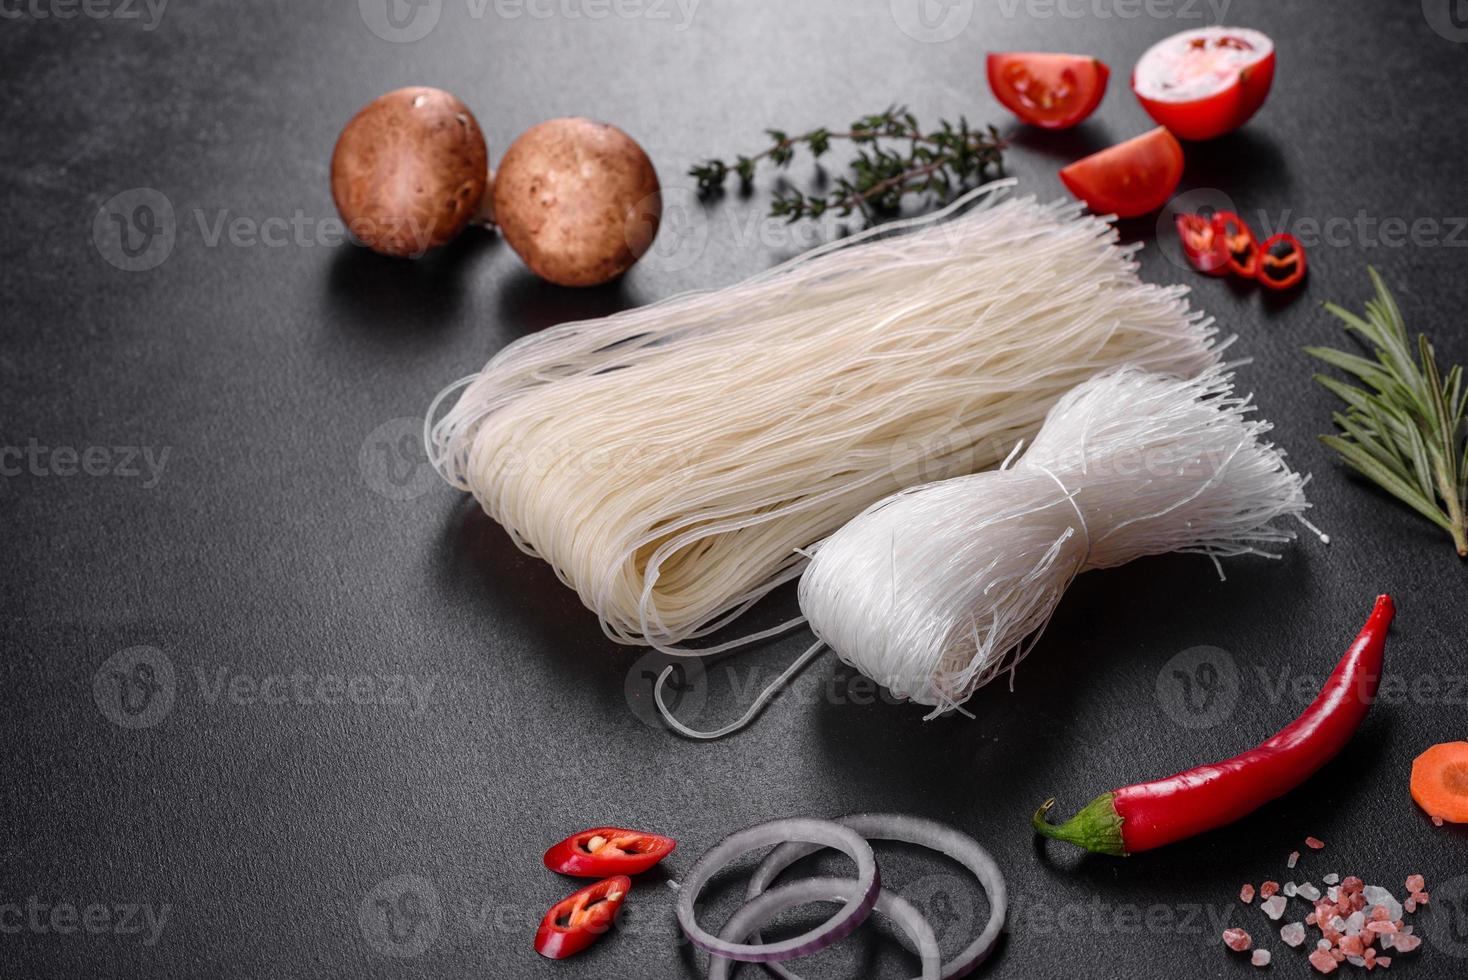 välsmakande risnudlar med tomat, röd paprika, svamp och skaldjur foto